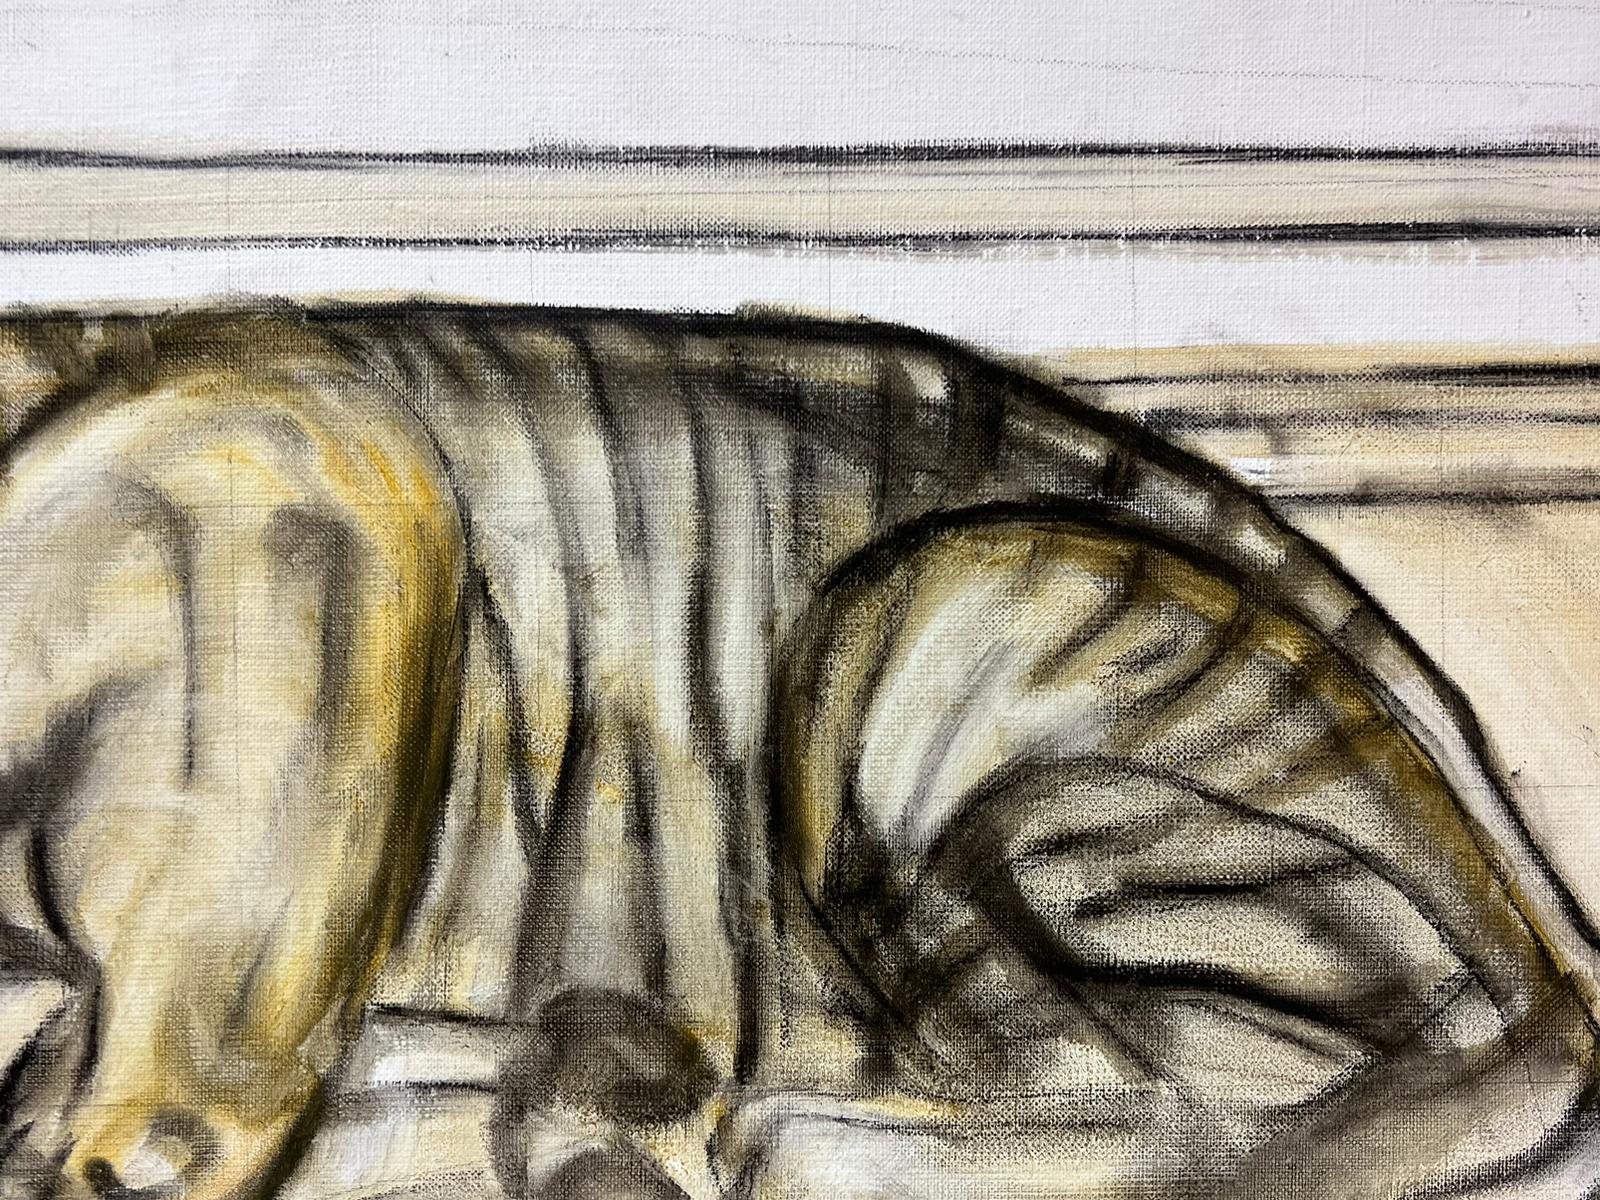 Trinkende Katze
Französischer Künstler der Moderne, Ende des 20.
signiertes Öl auf Leinwand, ungerahmt
Leinwand: 20 x 25,5 Zoll
Provenienz: Privatsammlung, Südfrankreich
Zustand: sehr guter und gesunder Zustand